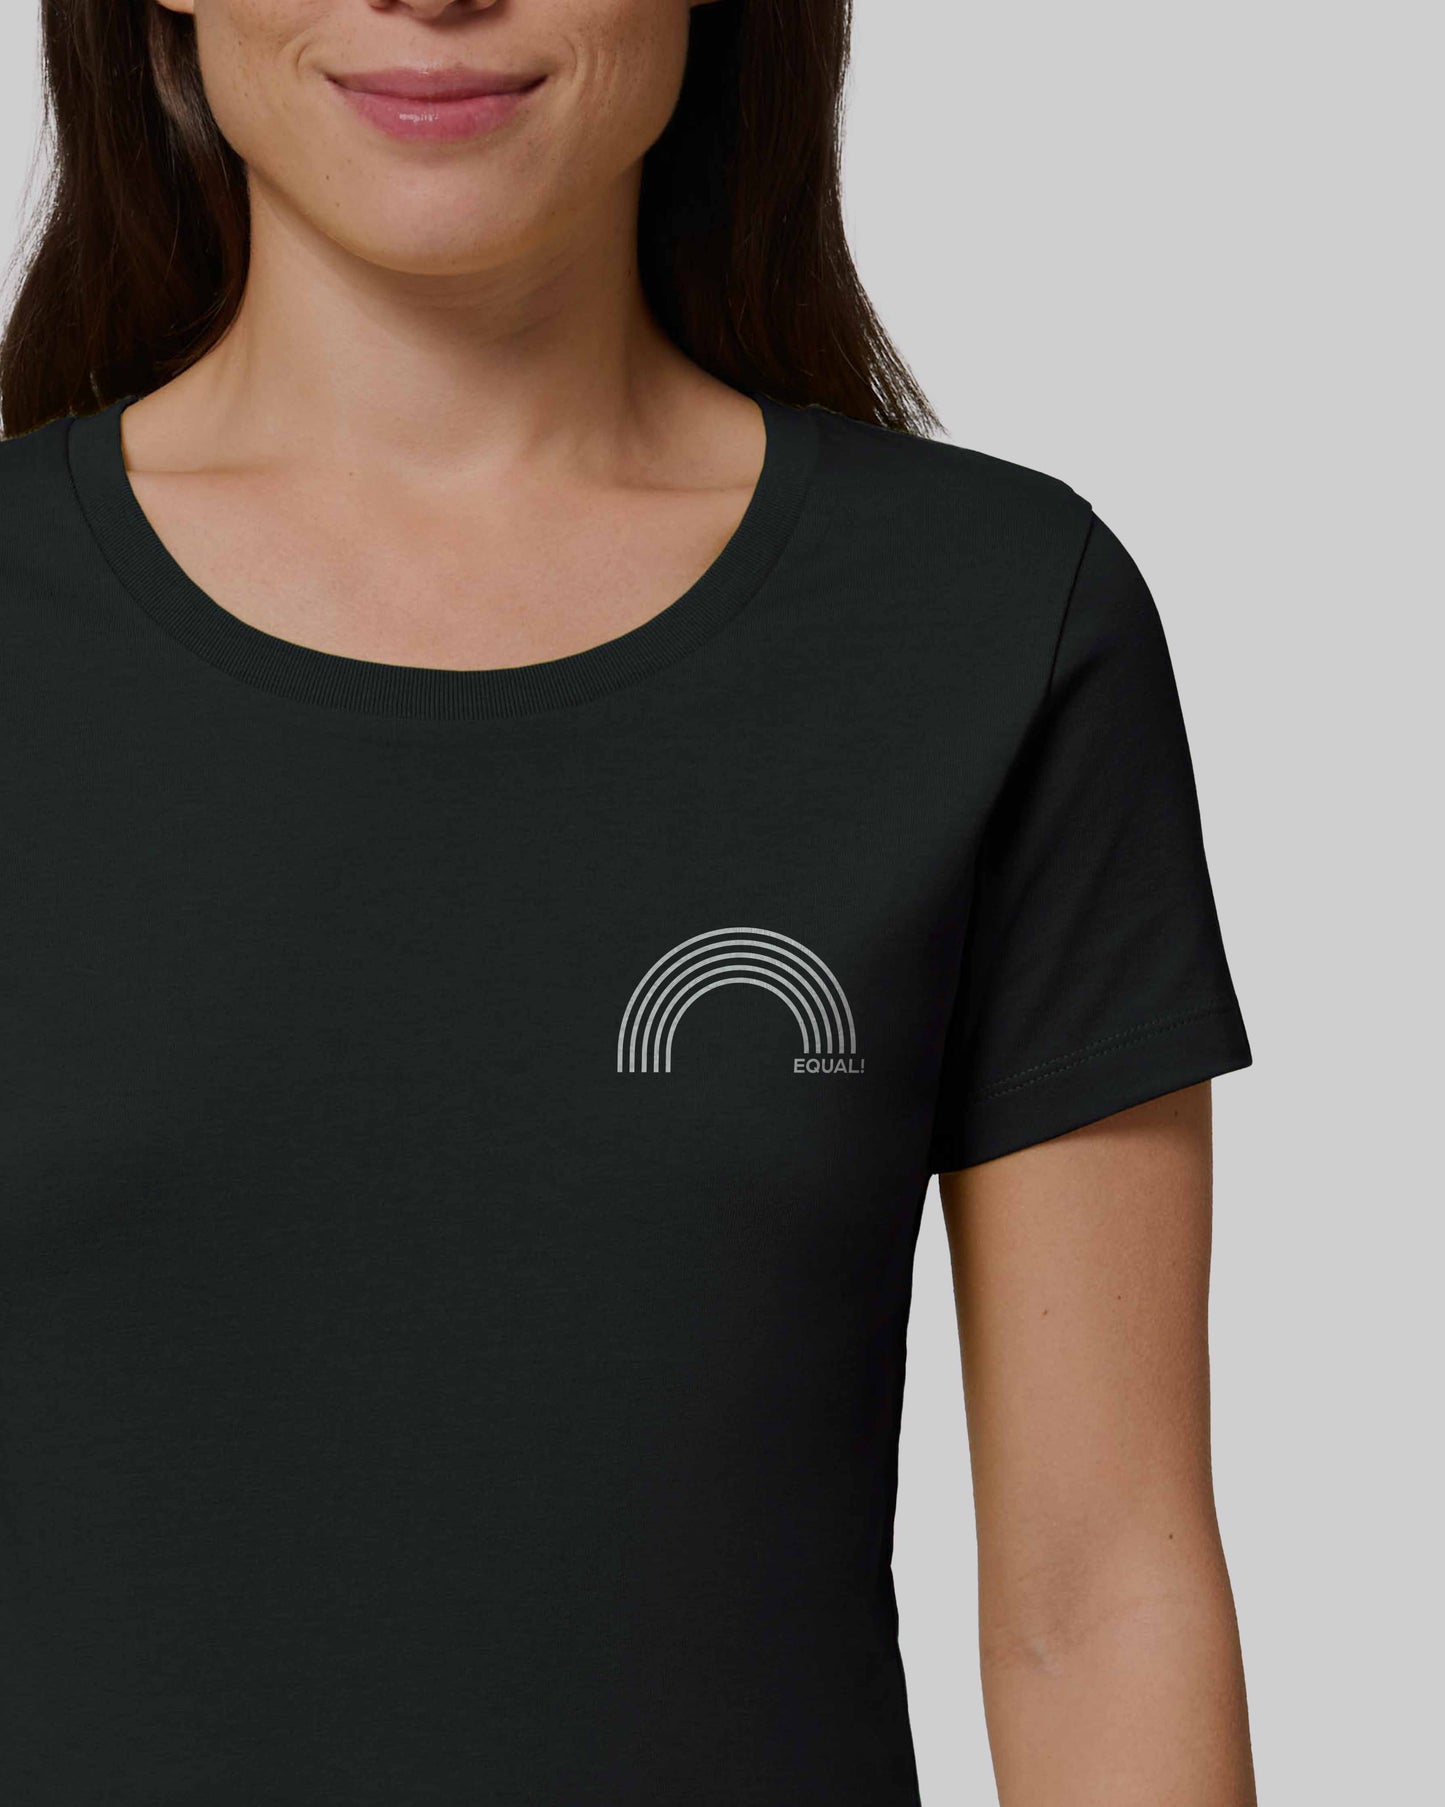 EINHORST® Organic Shirt tailliert in "Schwarz" mit dem Motiv "equal Regenbogen" in der Kombination weißer Regenbogen mit weißer Schrift, Bild von weiblicher Person mit Shirt